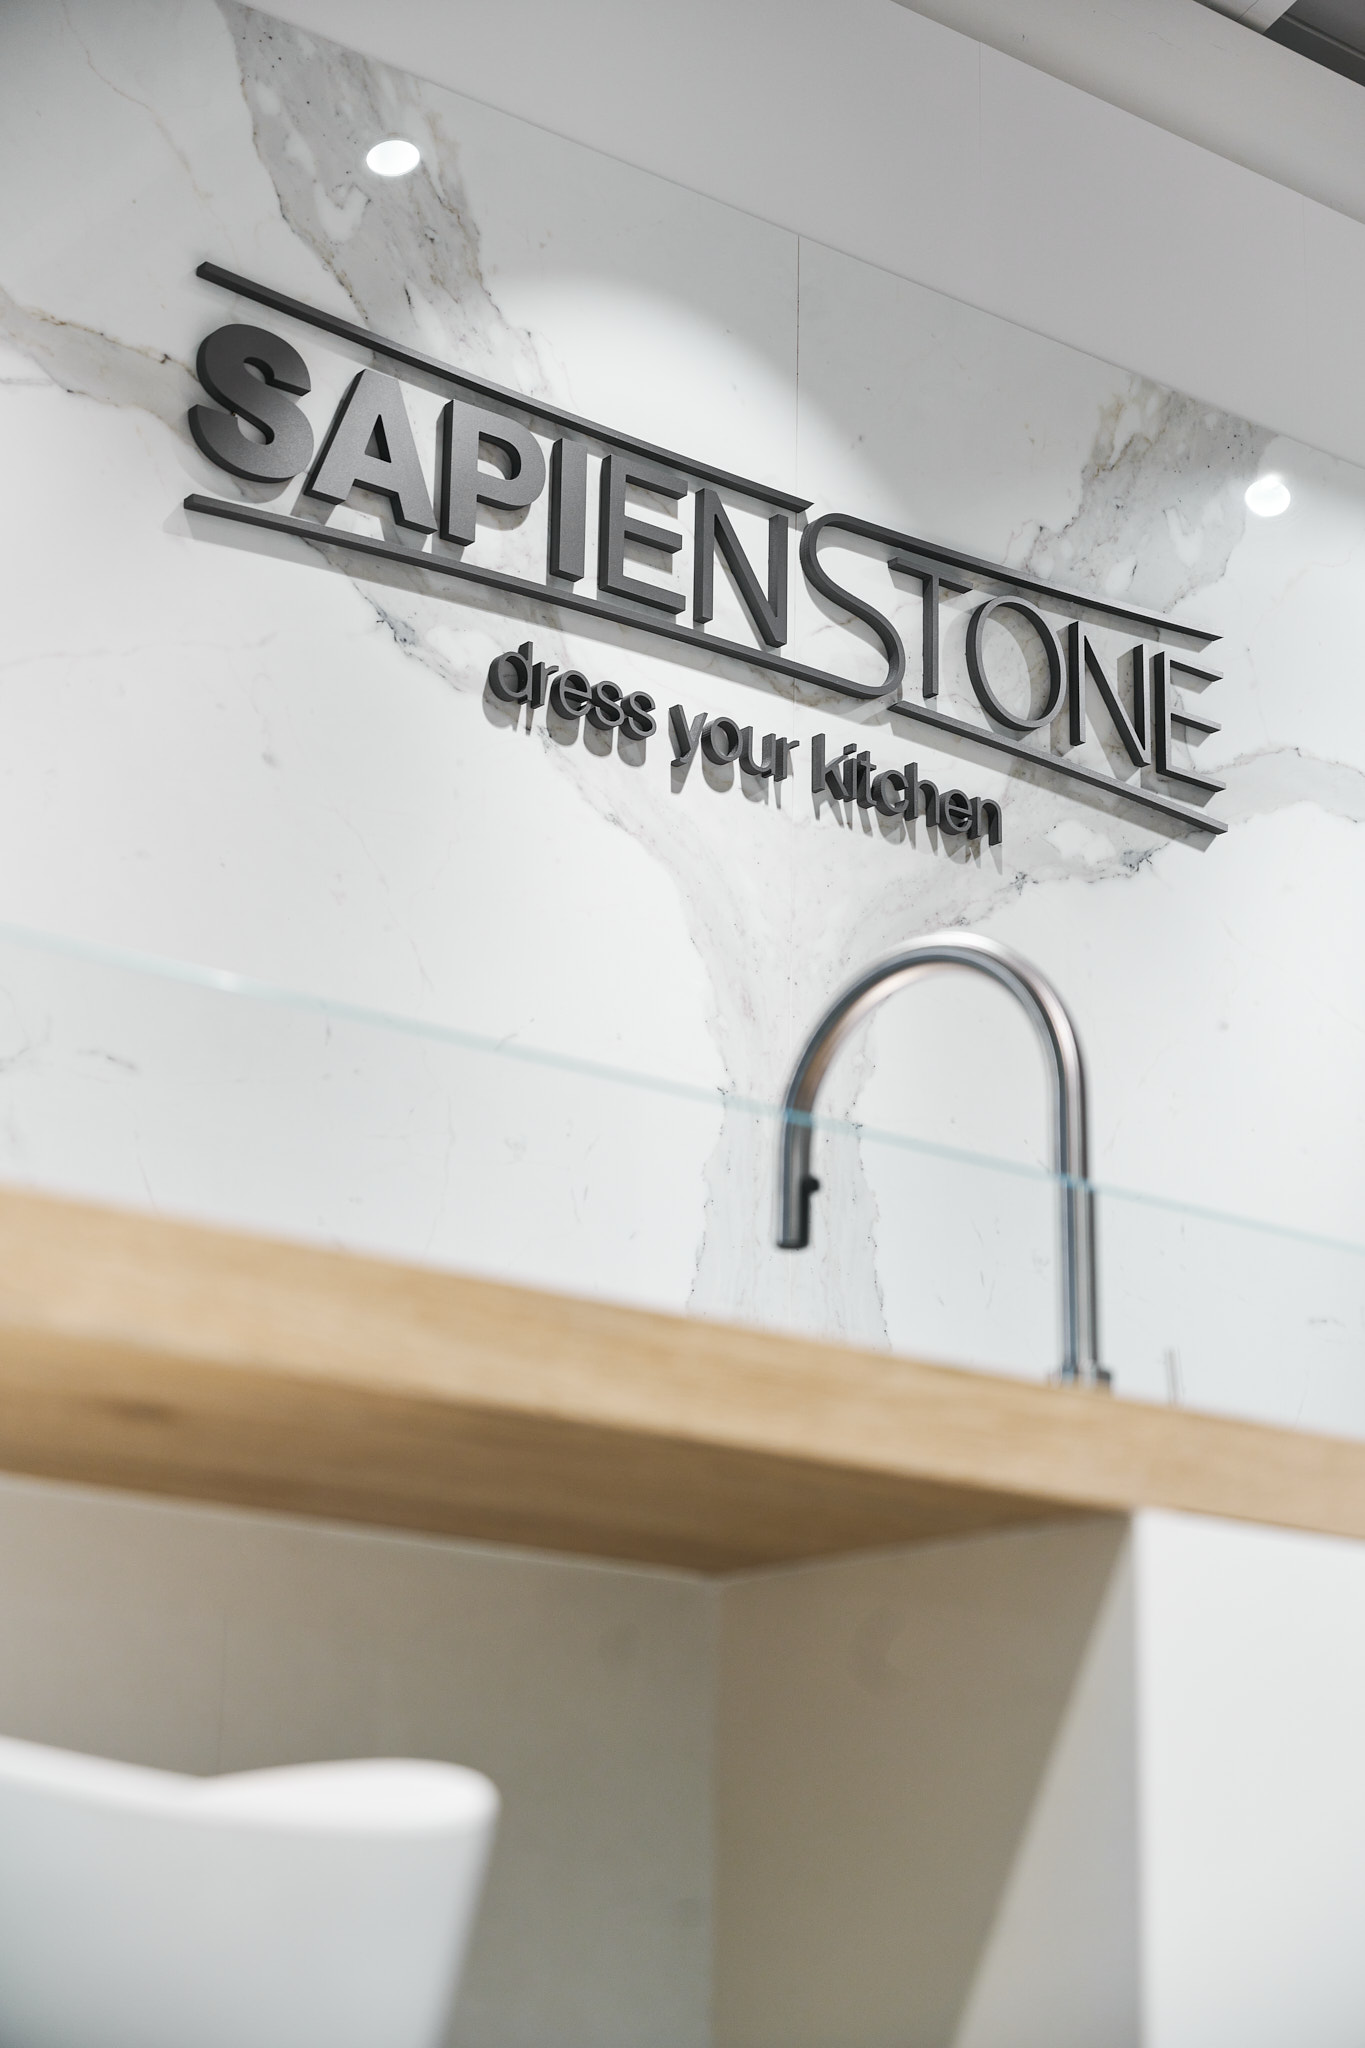 SapienStone rinnova lo showroom di Castellarano